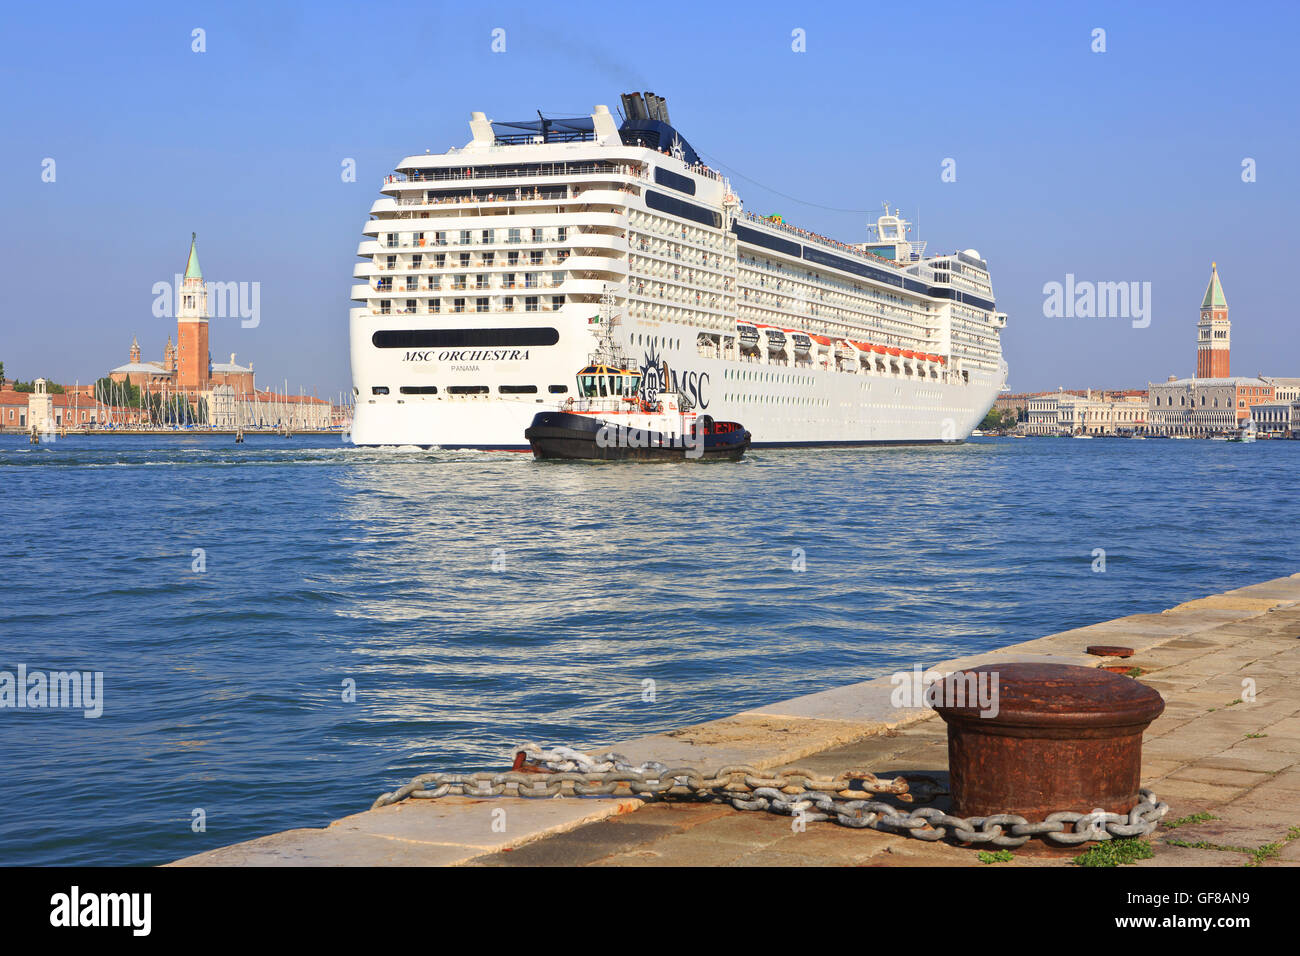 Le MSC Orchestra bateau de croisière naviguant le long de l'île de San Giorgio Maggiore (à gauche) et le palais des Doges (droite) à Venise, Italie Banque D'Images